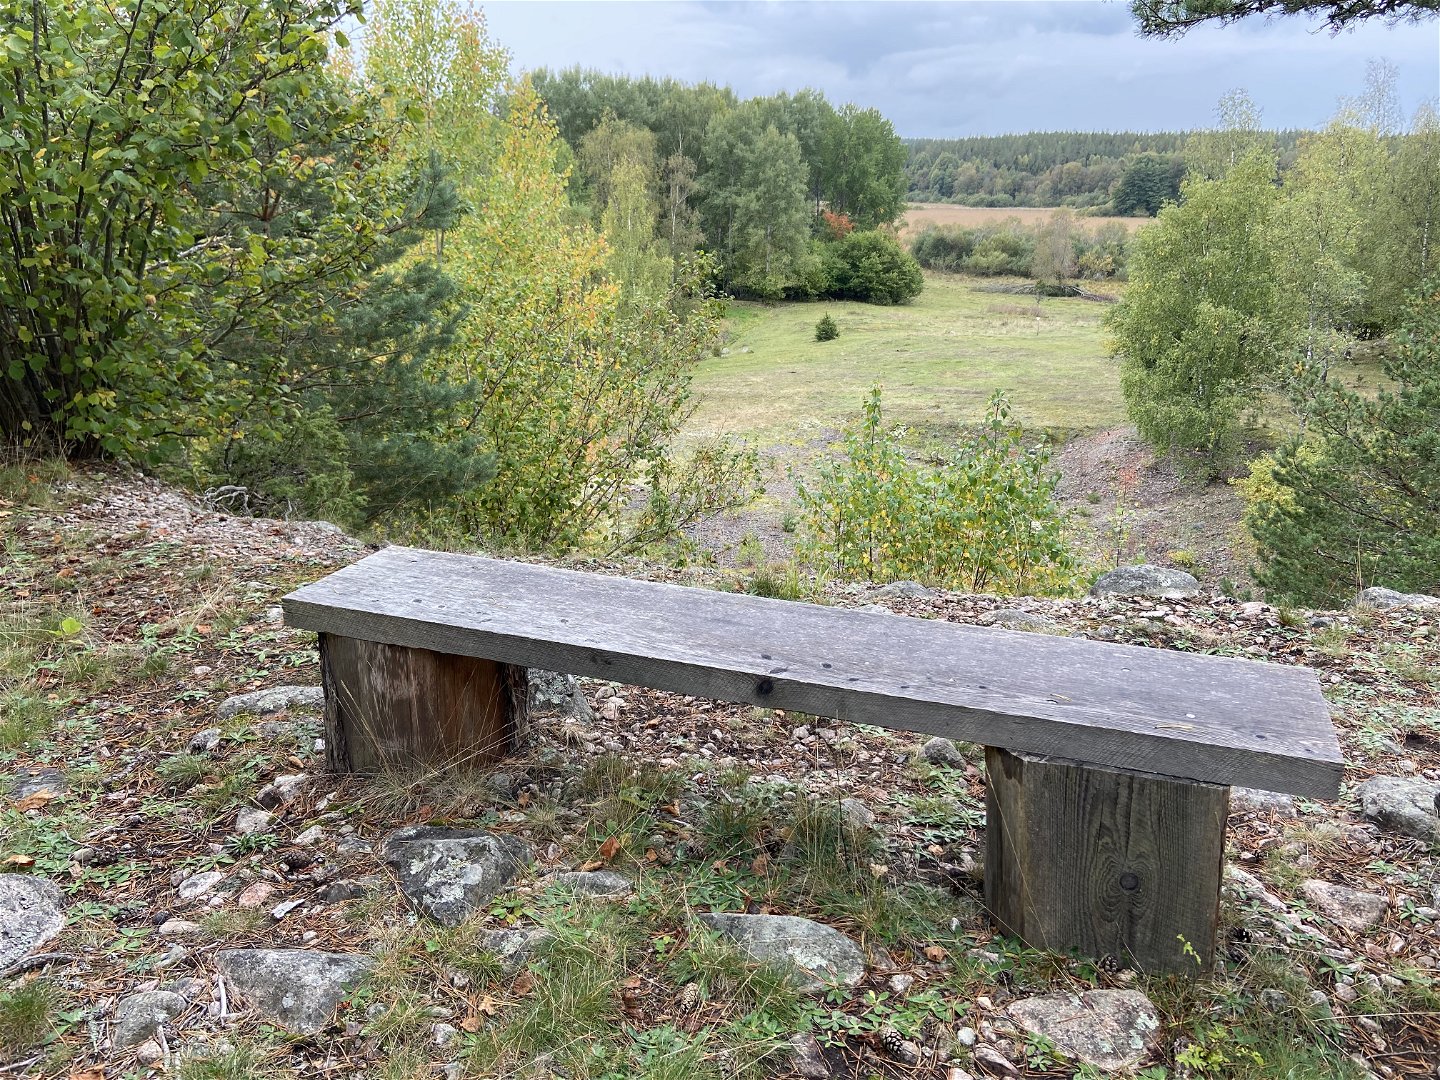 En sittbänk står på en stenig yta. I bakgrunden ser man vy över hagmark.